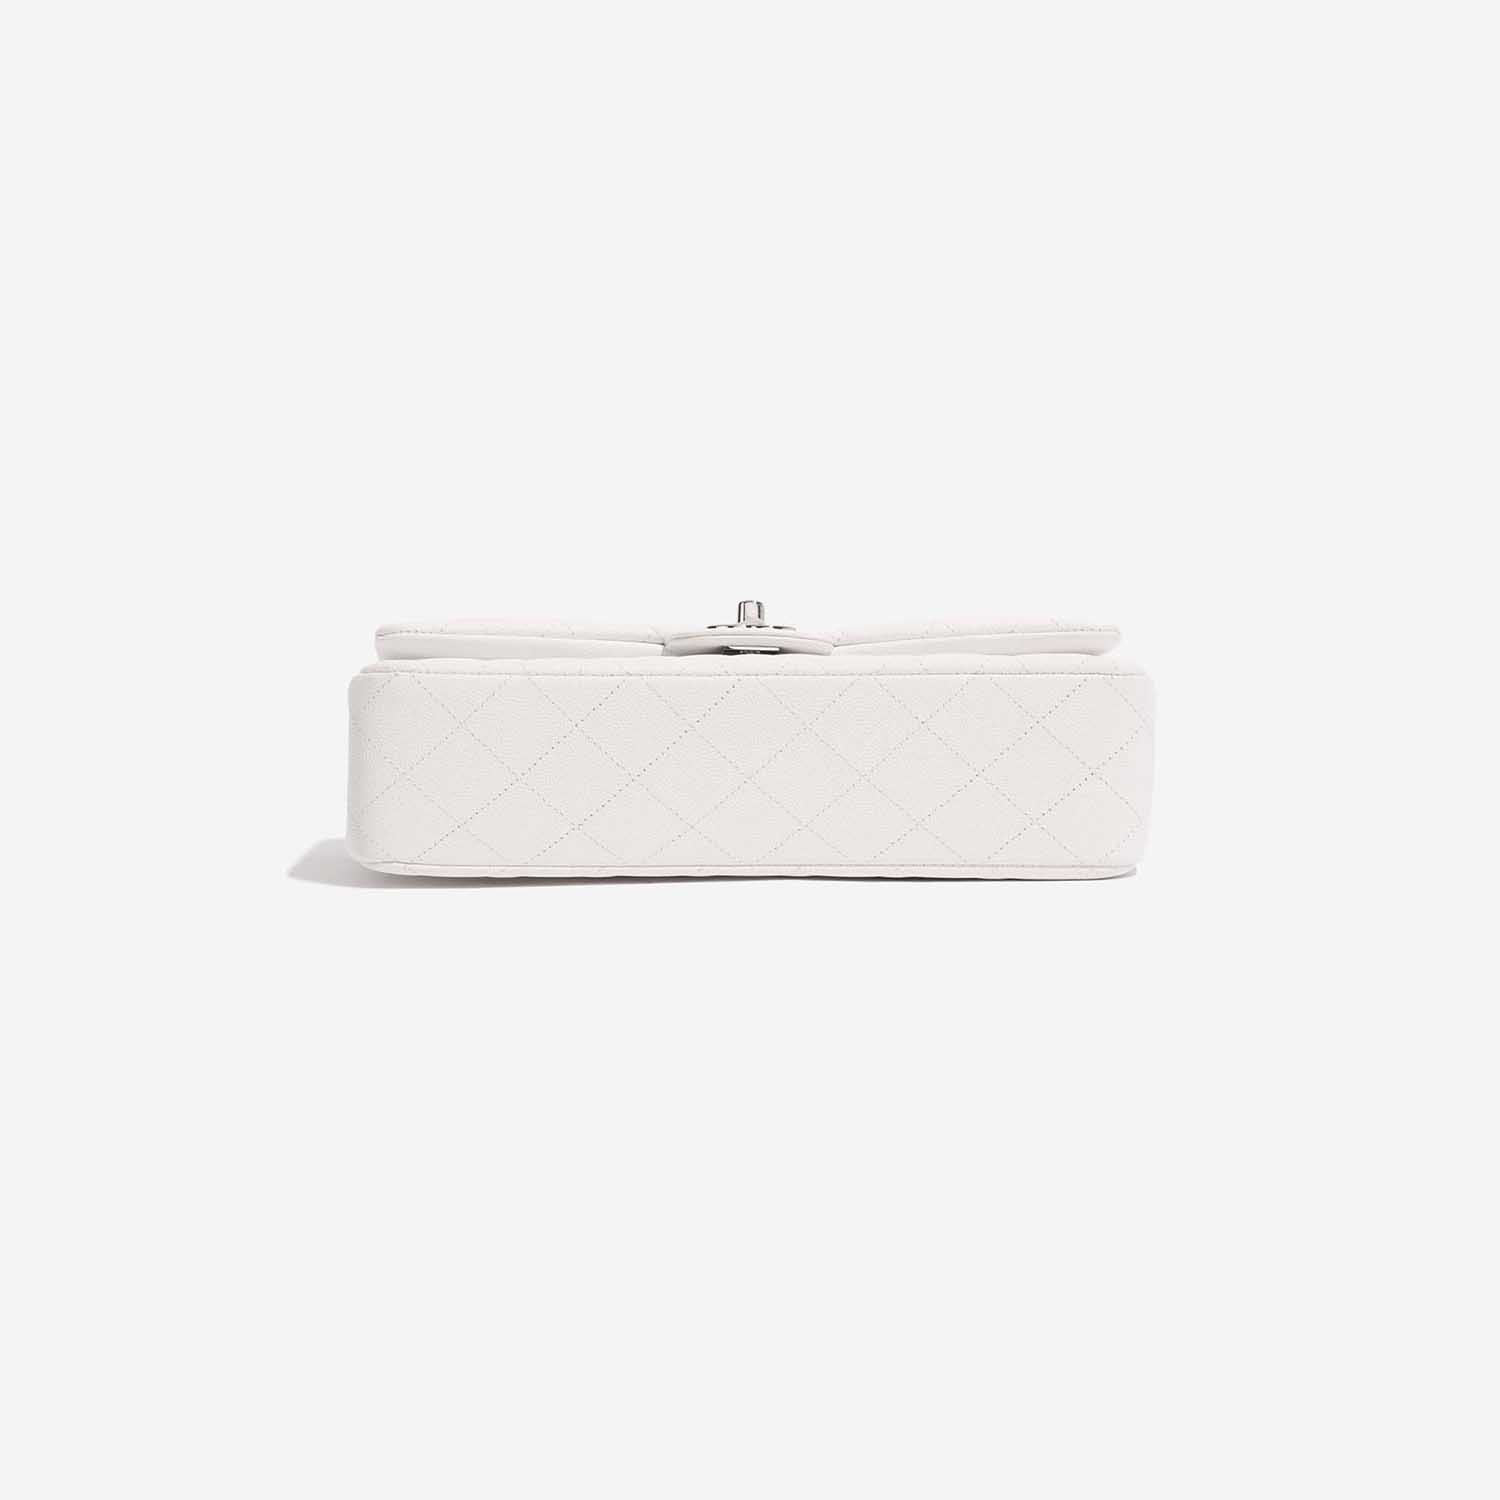 Chanel Timeless Medium White Bottom | Verkaufen Sie Ihre Designer-Tasche auf Saclab.com